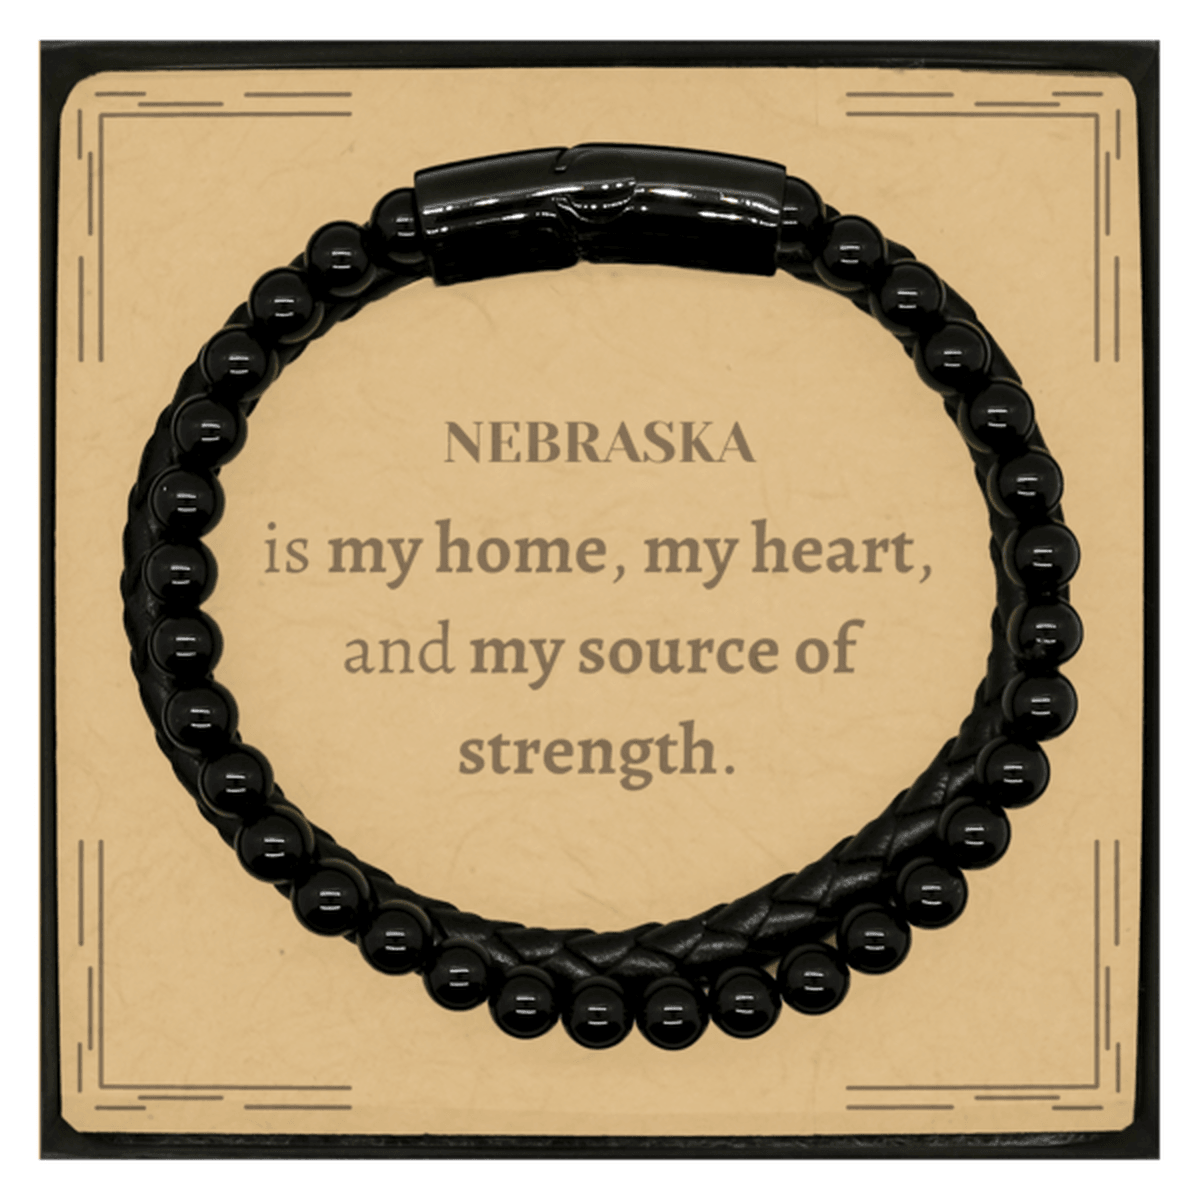 Nebraska is my home Gifts, Lovely Nebraska Birthday Christmas Stone Leather Bracelets For People from Nebraska, Men, Women, Friends - Mallard Moon Gift Shop